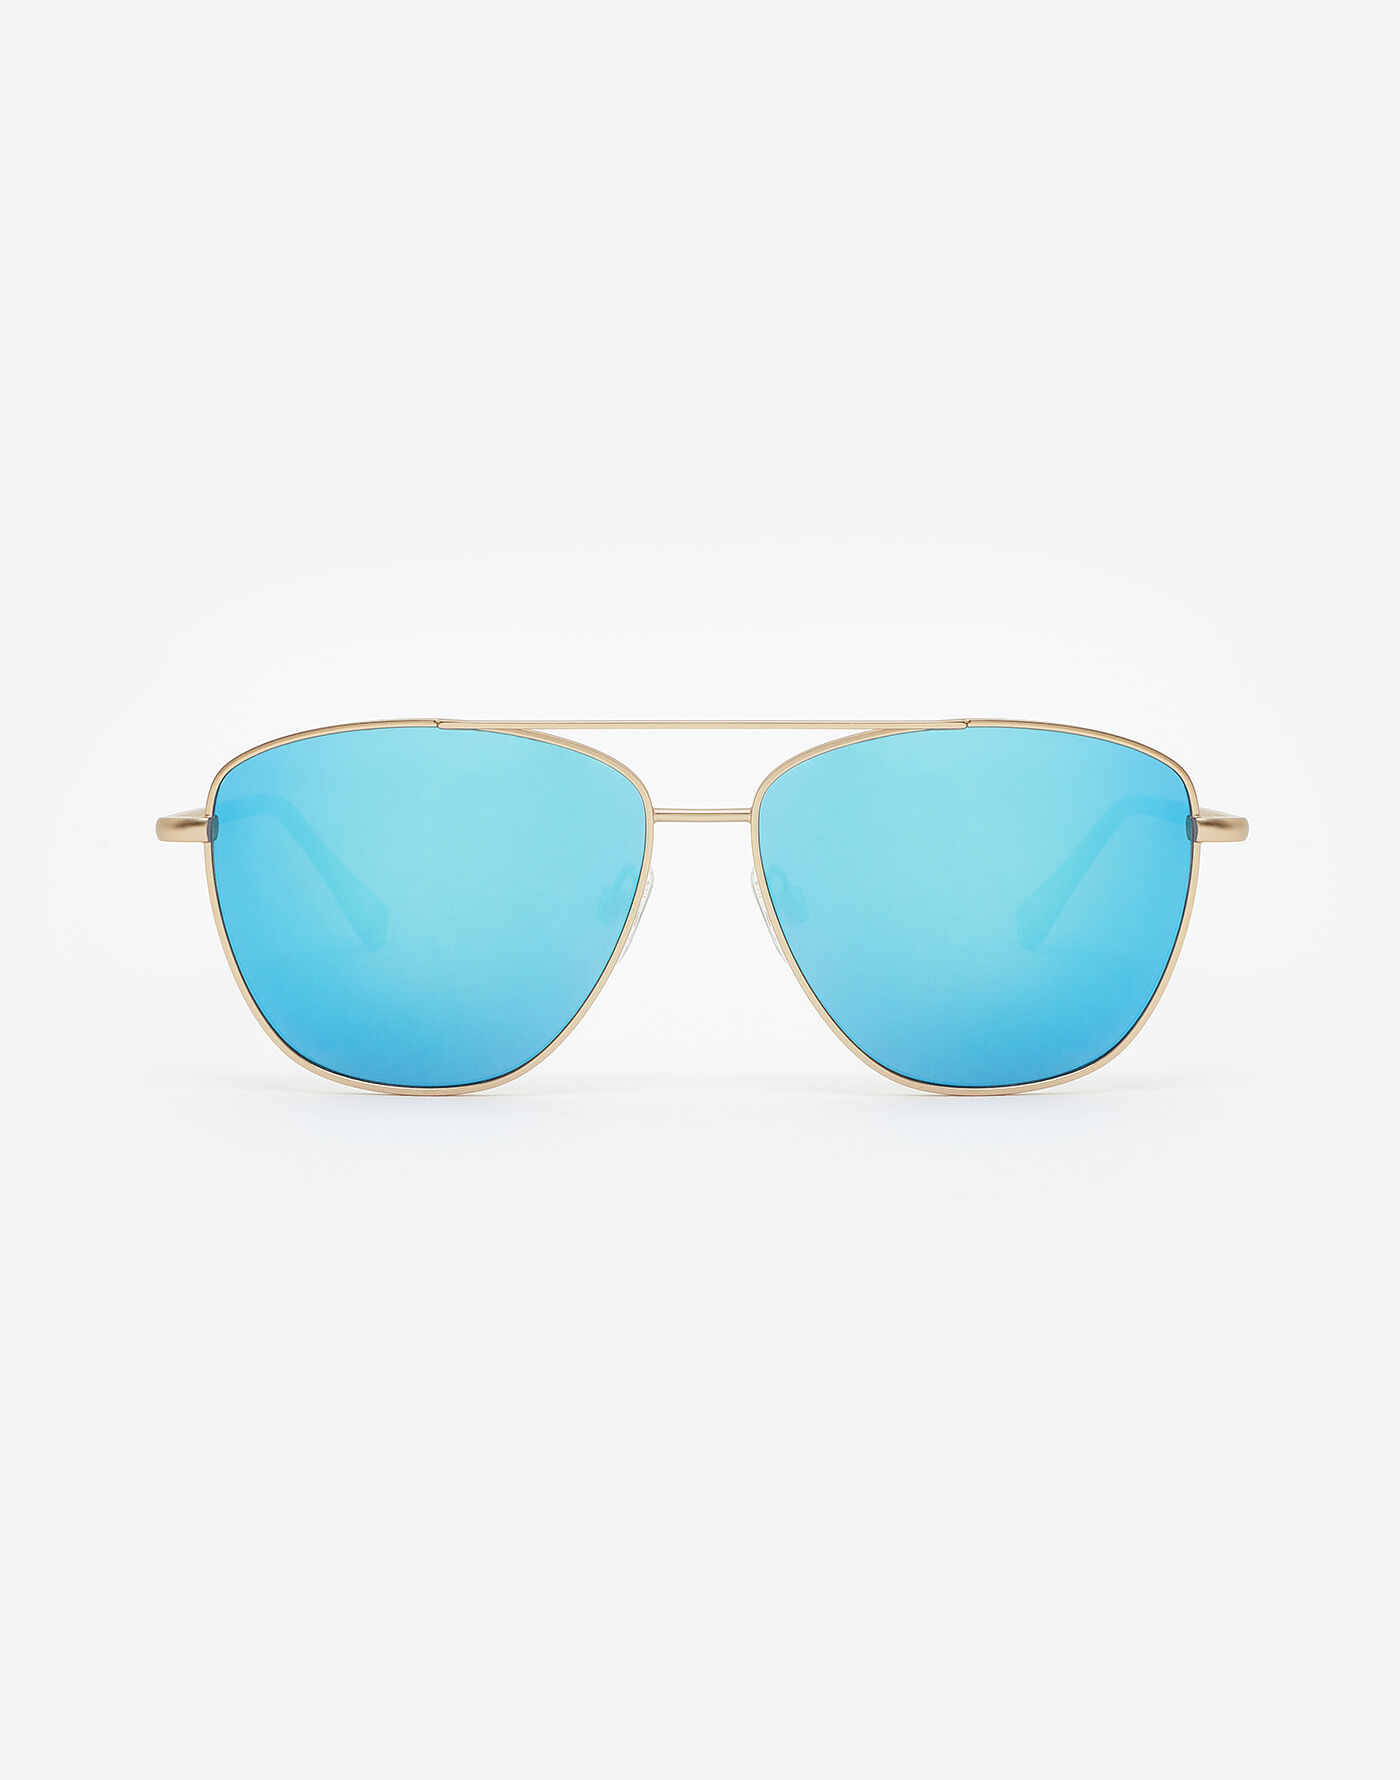 Único HAWKERS Unisex Adults’ Karat Clear LAX Sunglasses Gold/Blue 